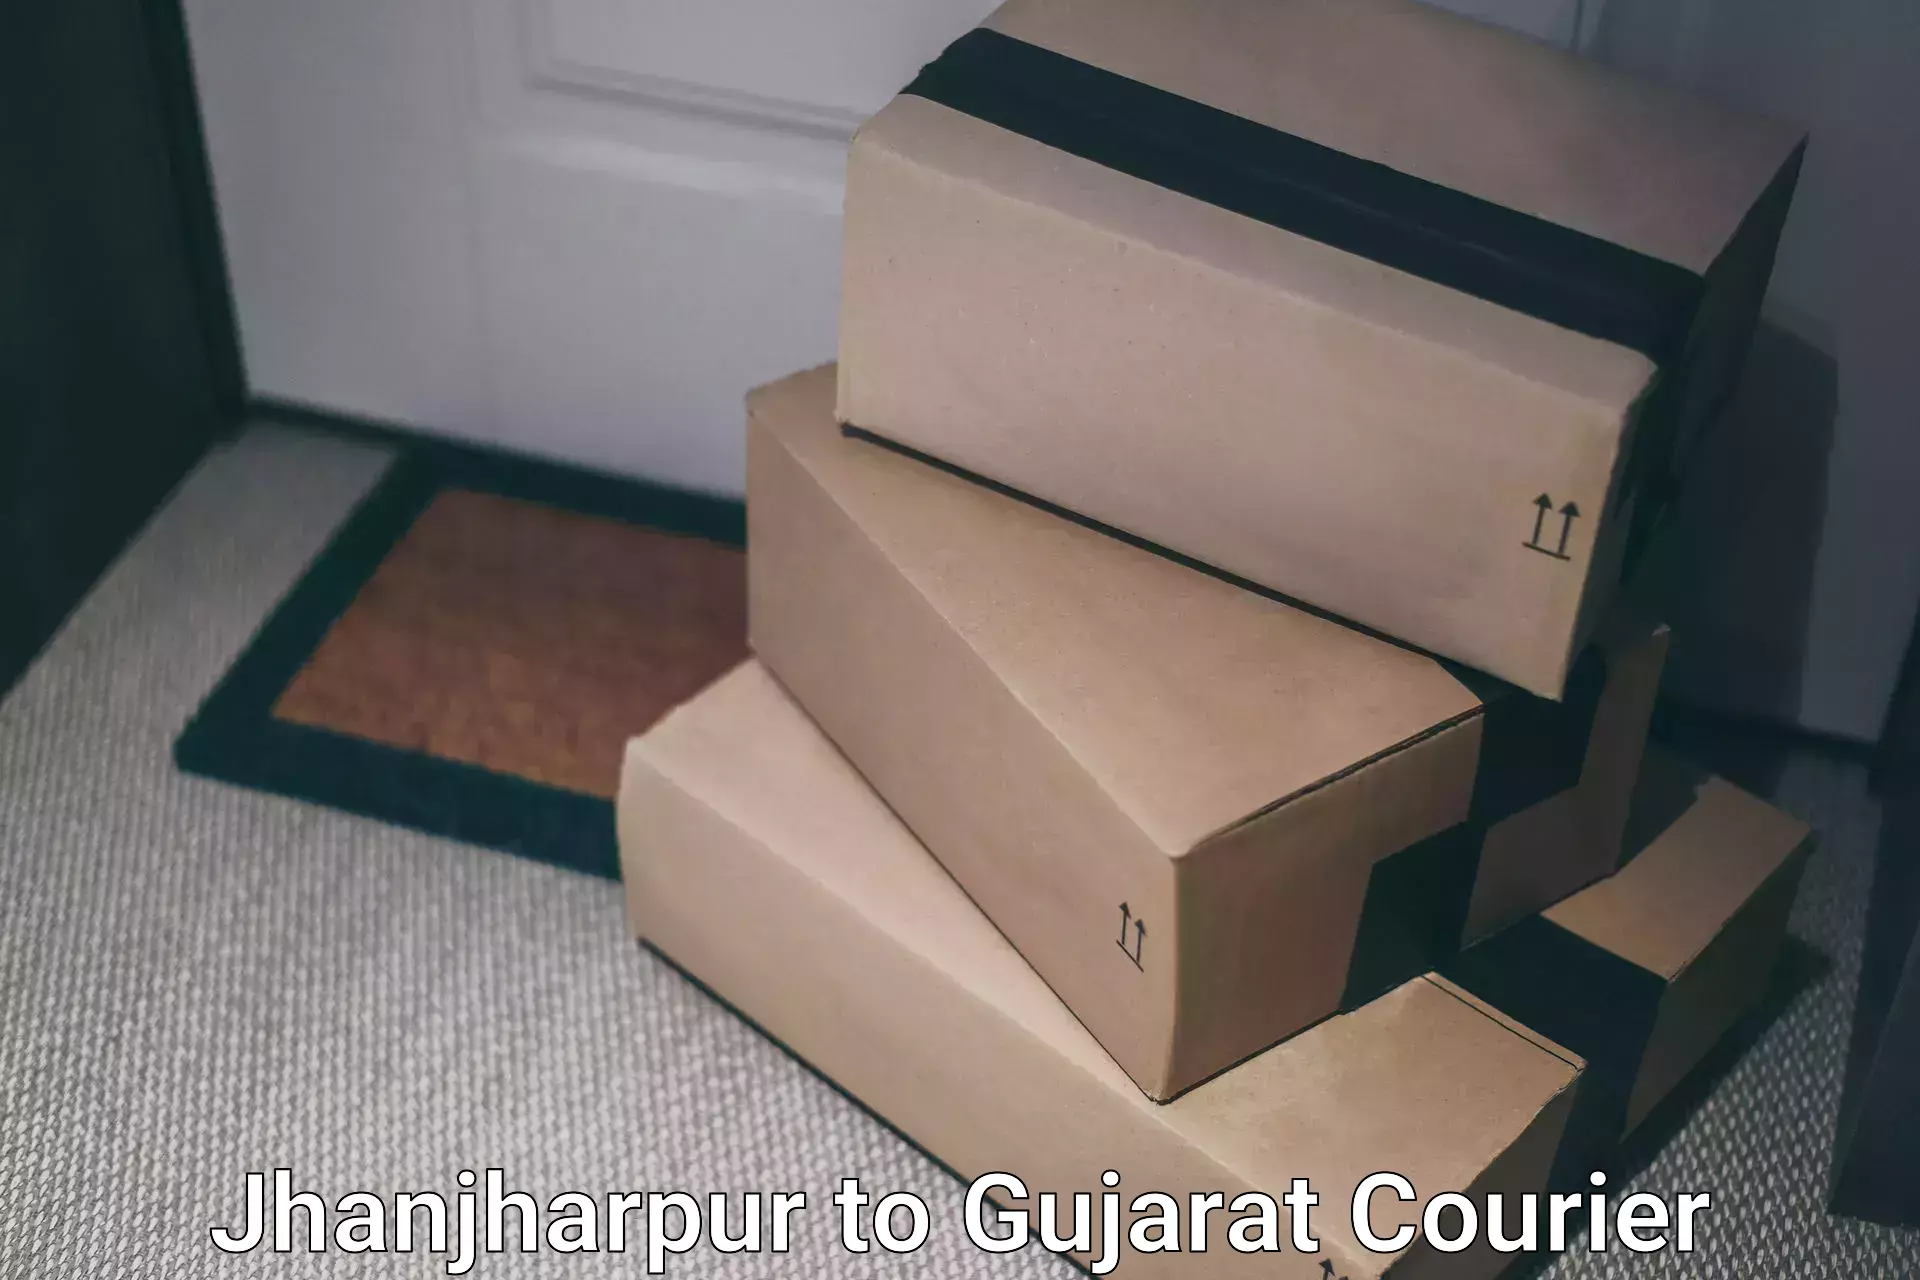 Full-service courier options Jhanjharpur to Ankleshwar